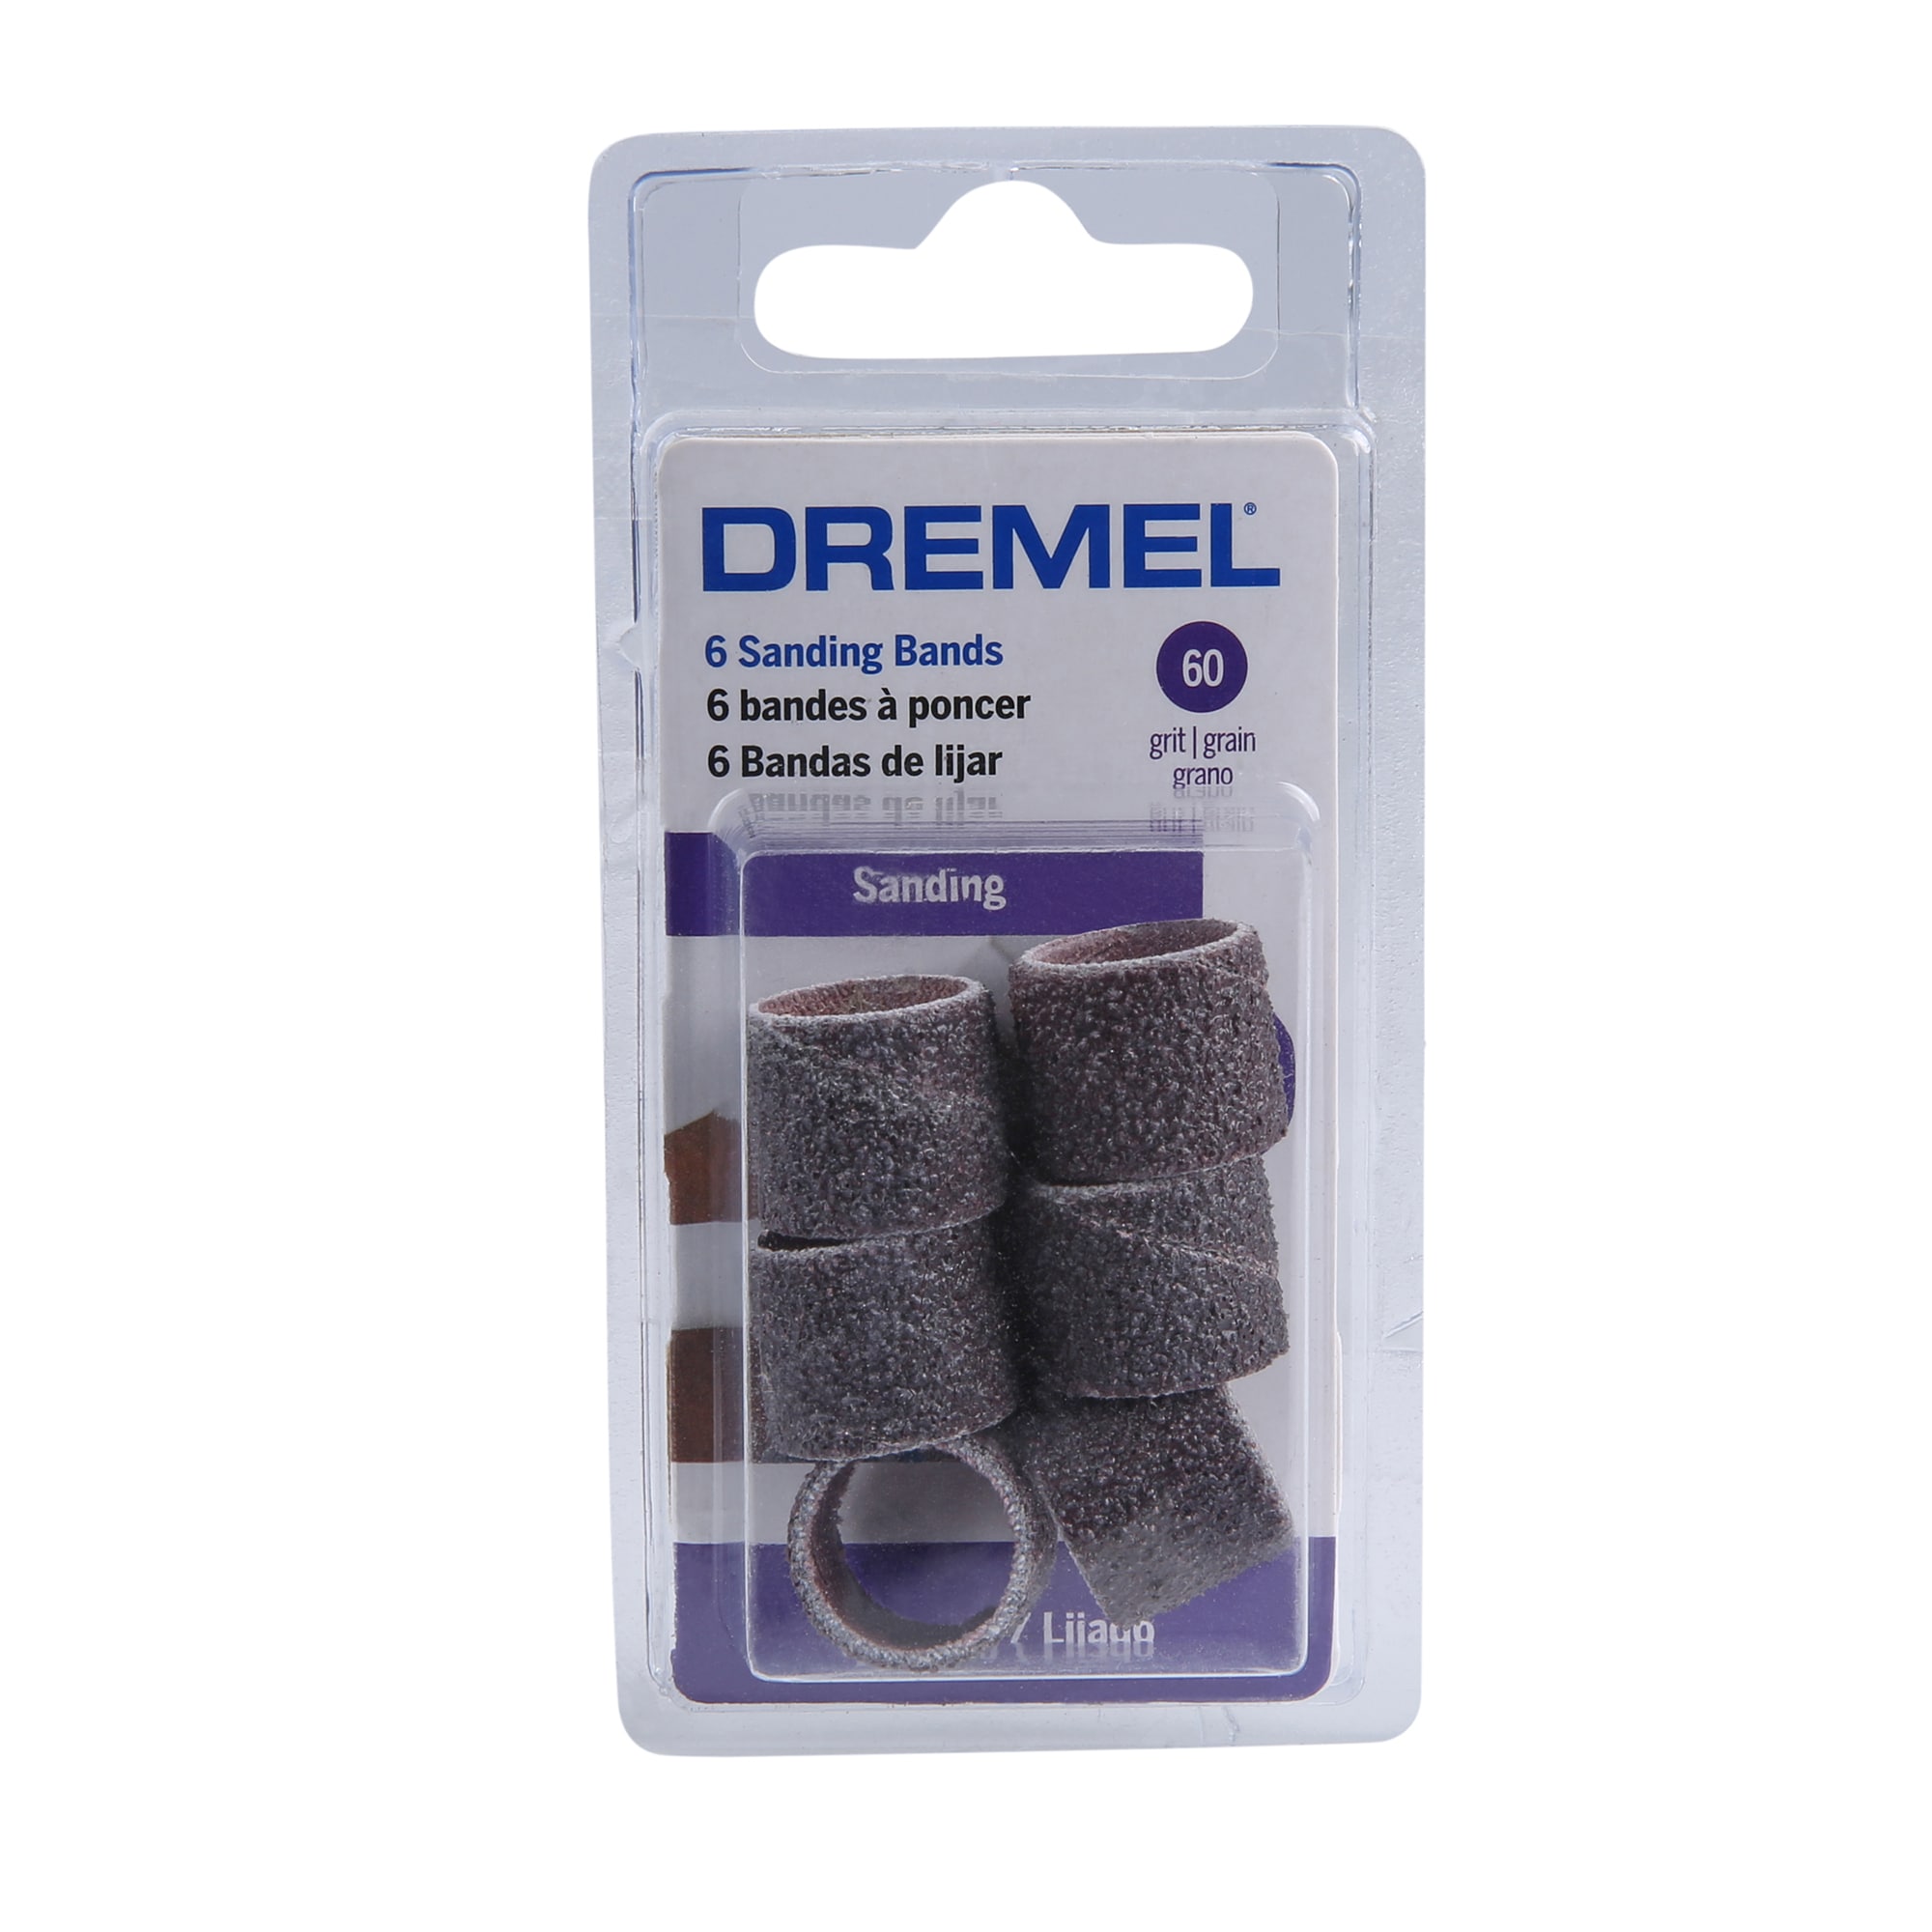 Dremel 7350-PET Cordless Rotary Tool Kit